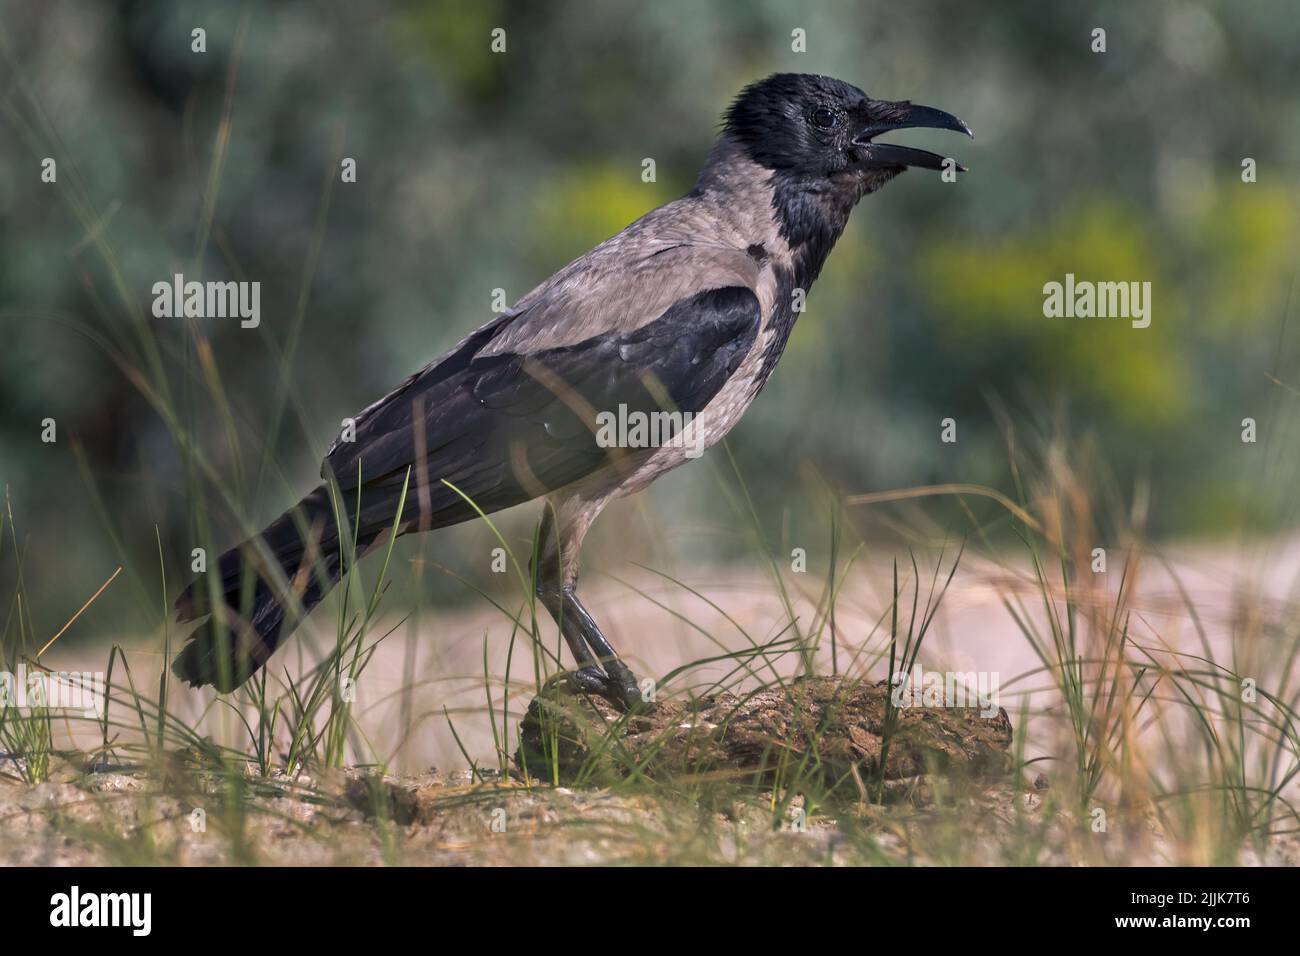 Hooded Crow (Corvus corone cornix). Romania Stock Photo